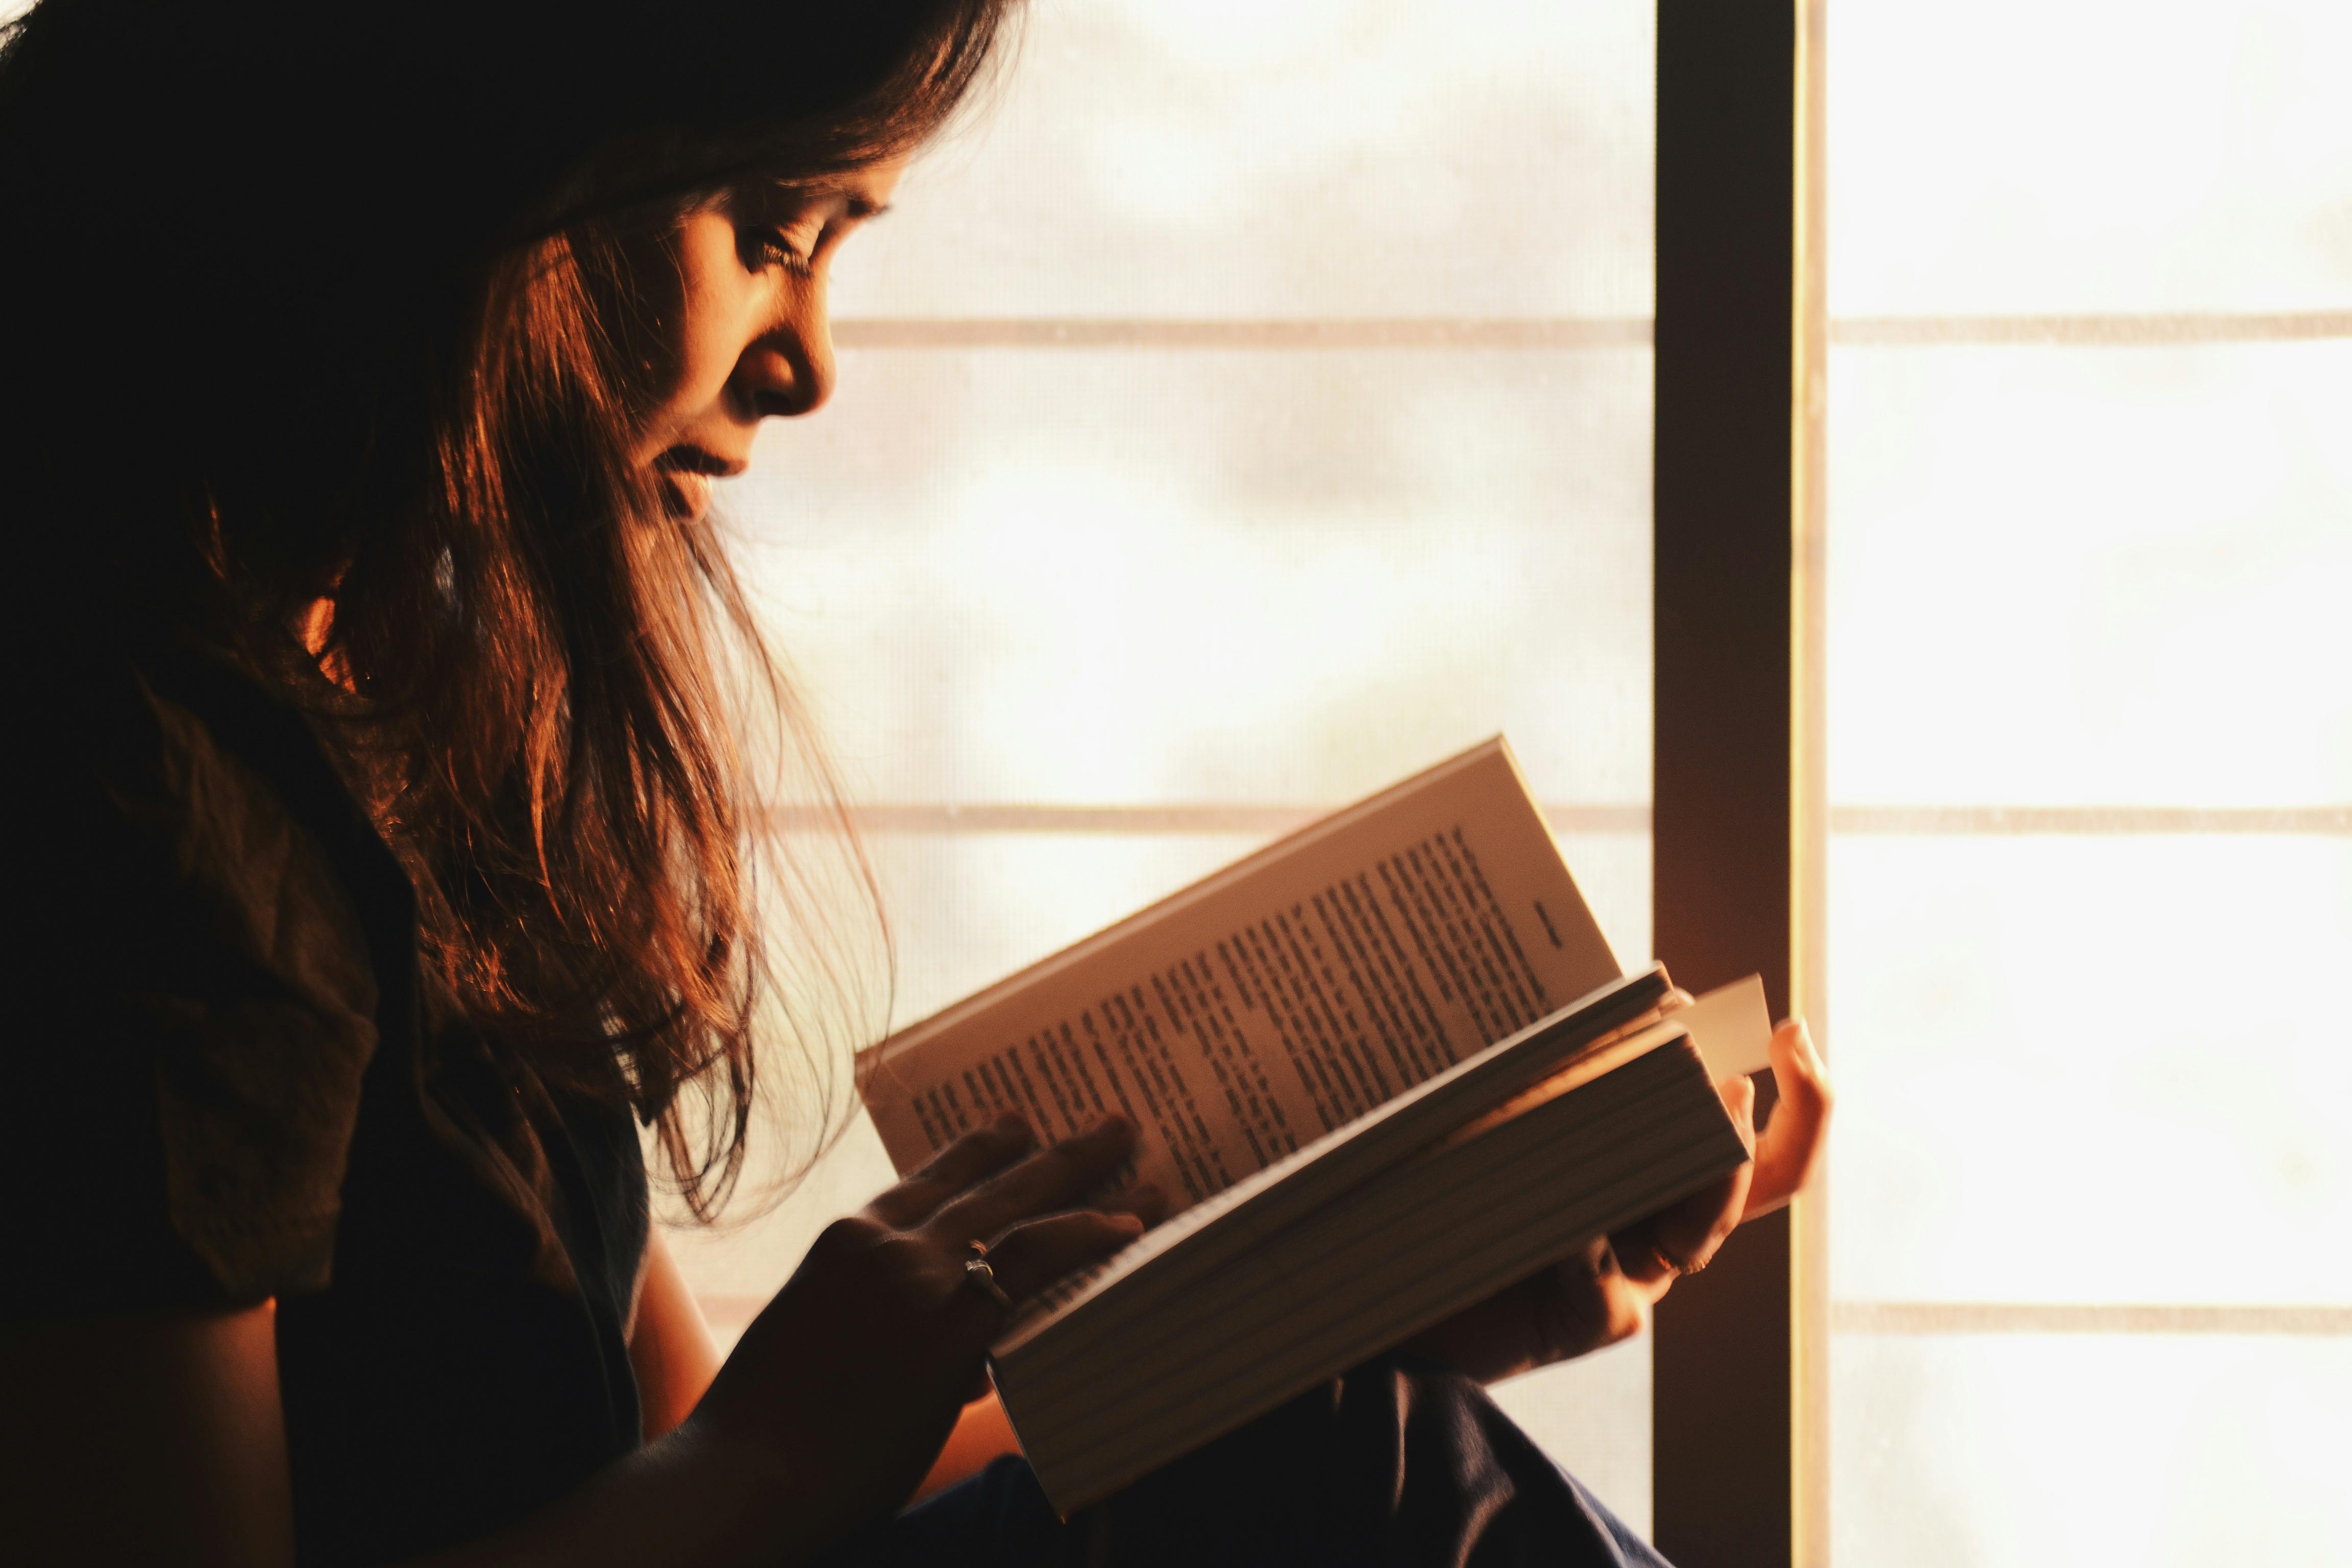 Une jeune femme lisant un livre | Source : Rahul Shah sur Pexels